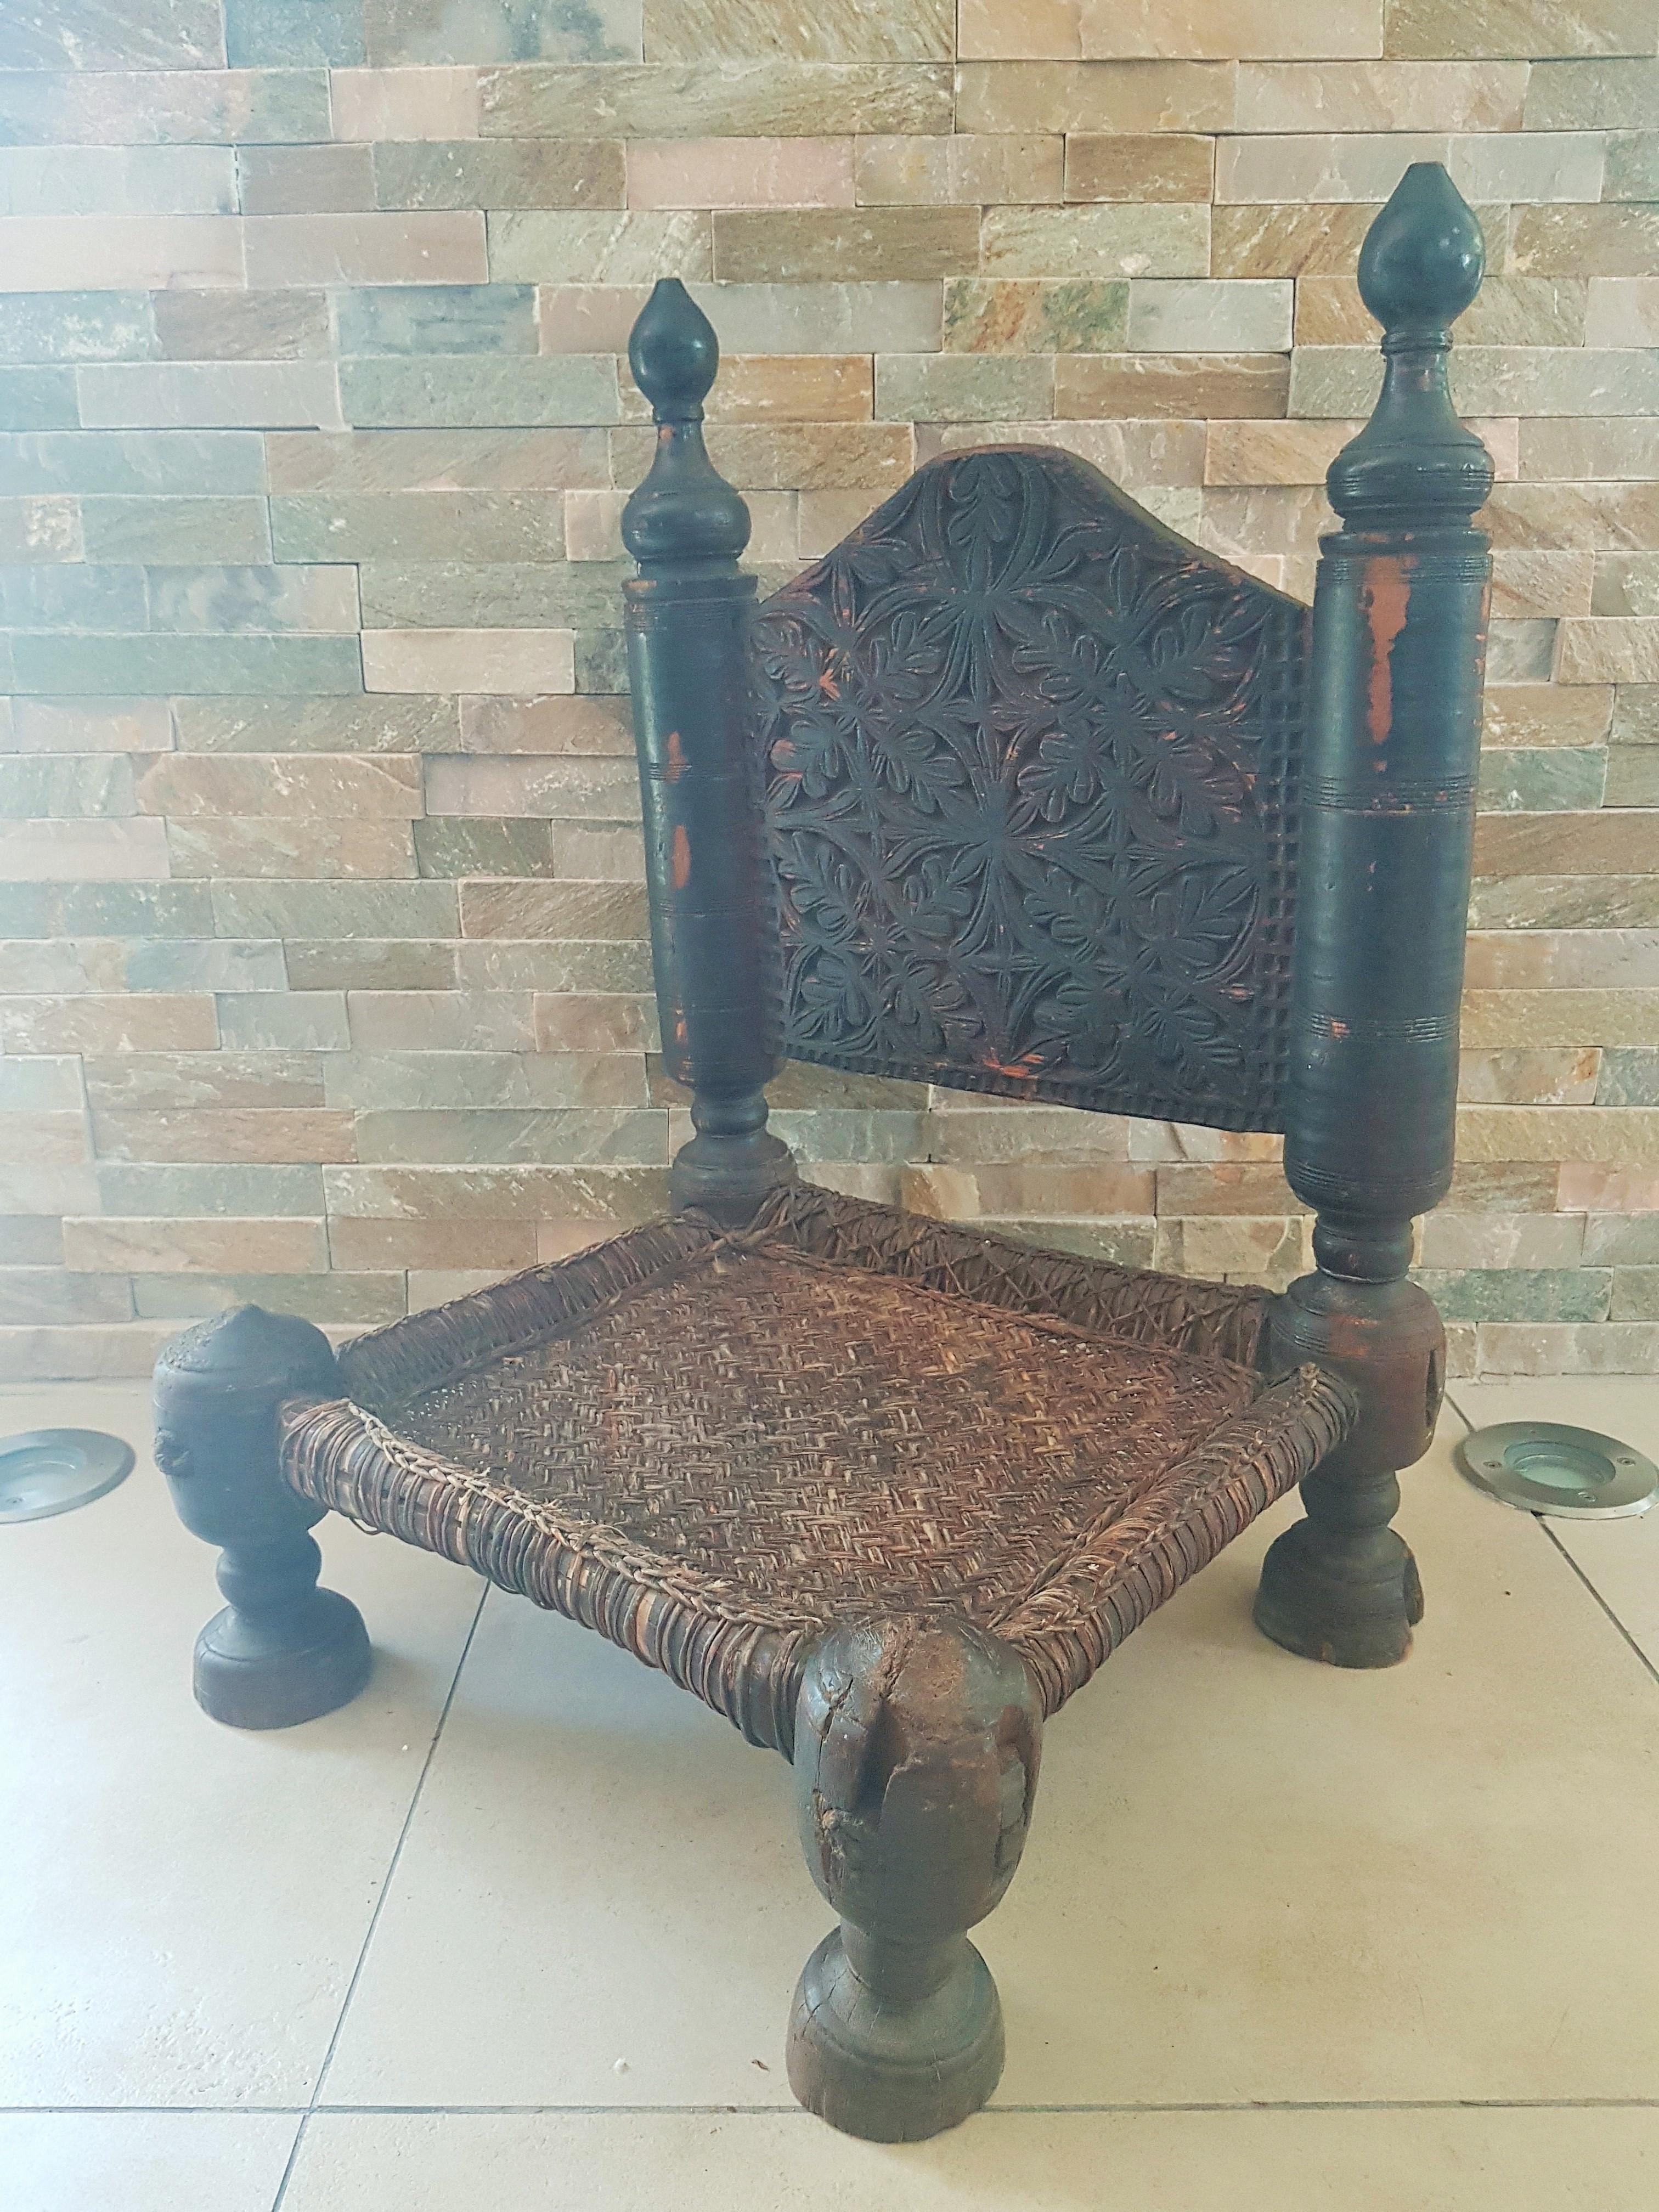 Ein antiker asiatischer rustikaler niedriger Stuhl aus dem 19. Jahrhundert, wahrscheinlich aus Burma.

geschnitzte rückenlehne mit handgeflochtener sitzfläche in schönem verwitterten zustand. noch in stabilem zustand!

Ein toller dekorativer